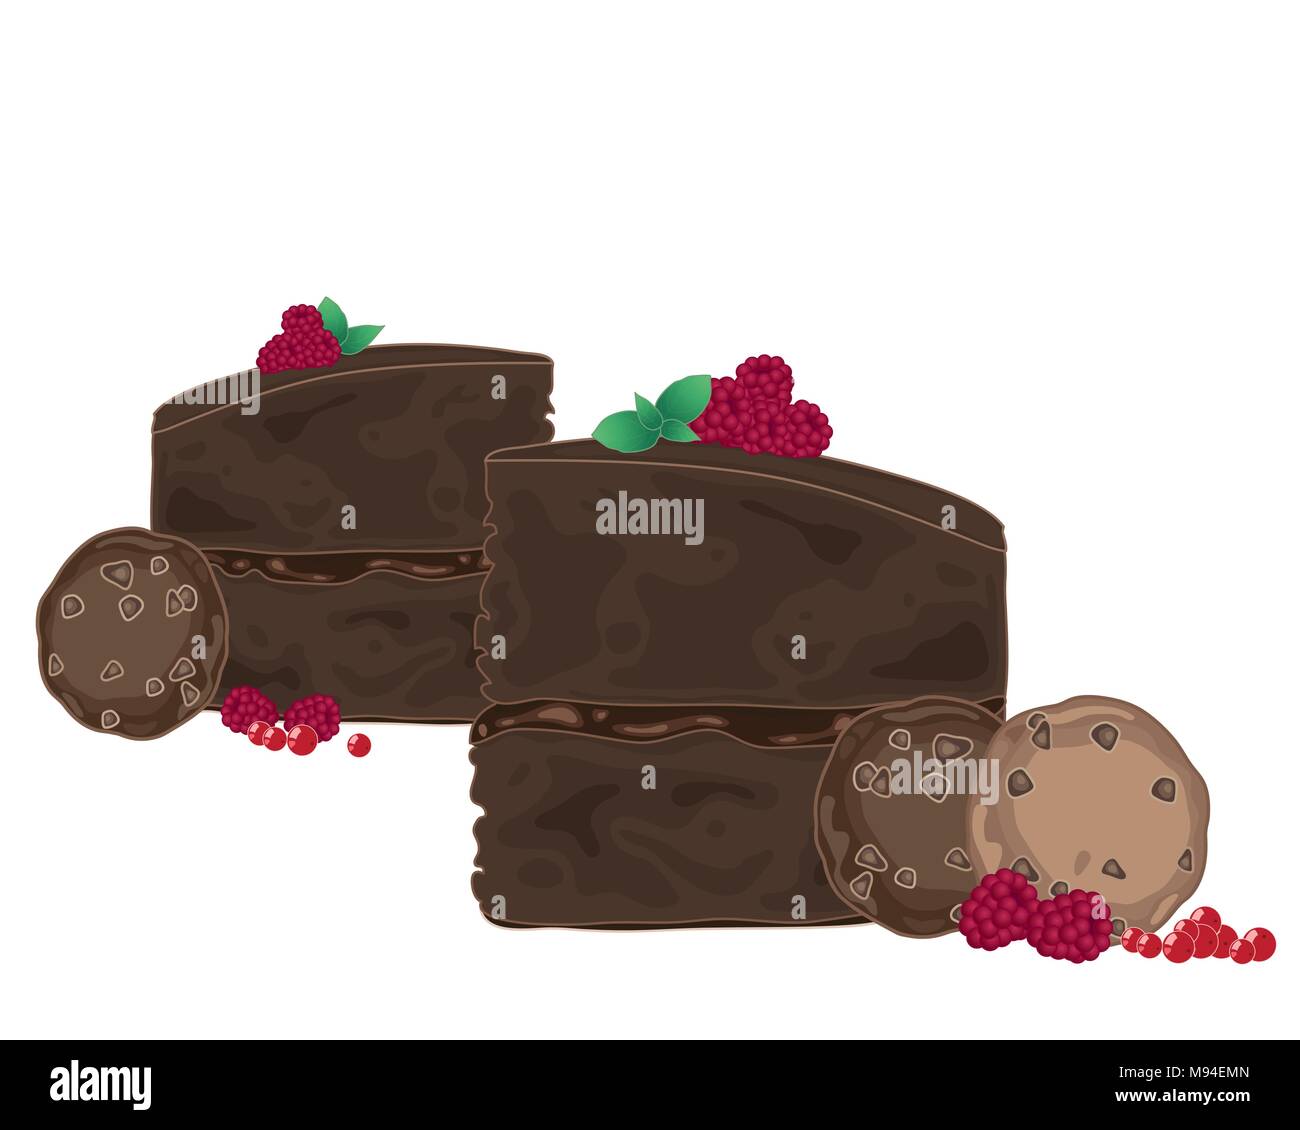 Un vecteur illustration en eps 10 format de tranches de gâteau au chocolat à la framboise et feuille de menthe décoration sur un fond blanc Illustration de Vecteur